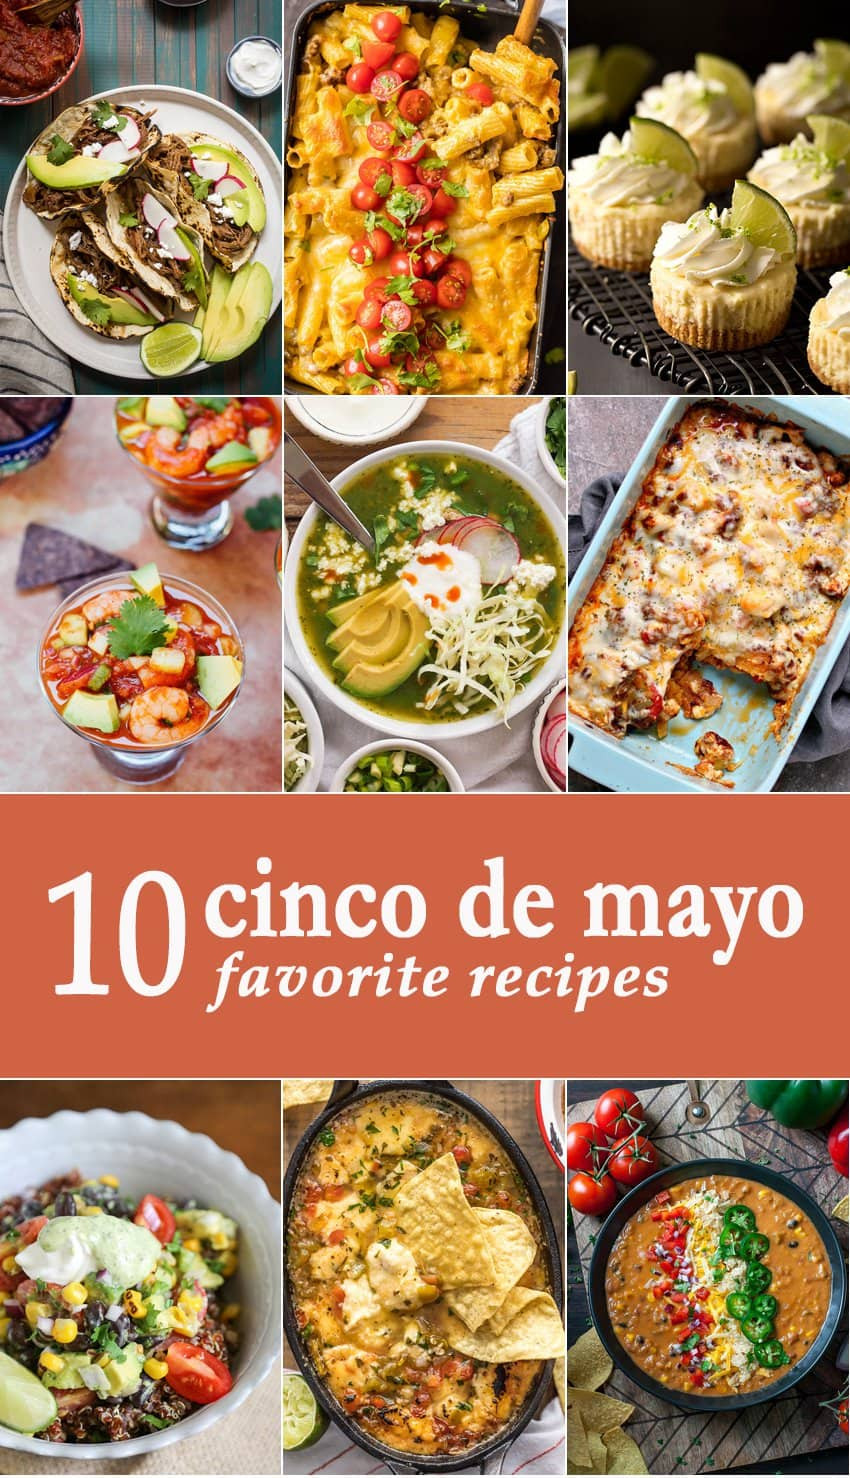 Cinco De Mayo Food
 10 Favorite Cinco de Mayo Recipes The Cookie Rookie